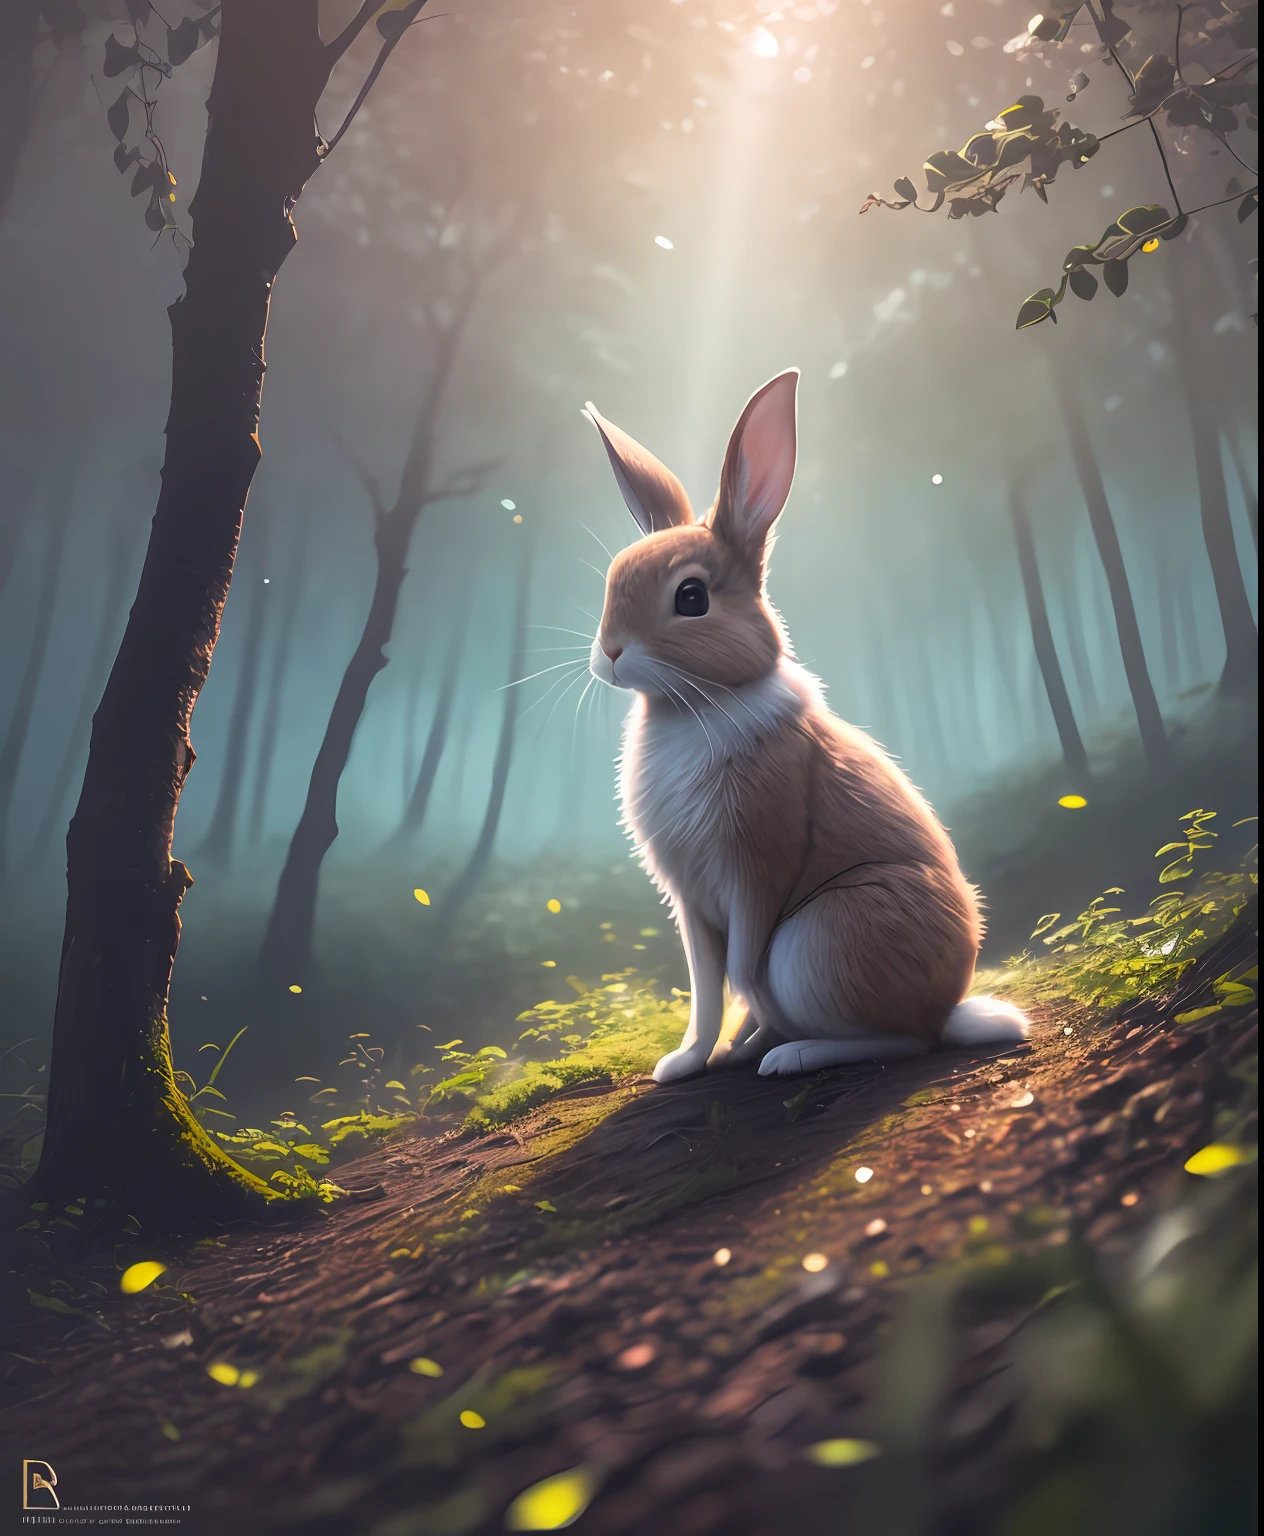 魔法森林中一隻兔子的特寫照片, 深夜, 在樹林裡, 背光, 萤火虫, 體積霧, 光環, 盛開, 戲劇性的氣氛, 中心, 三分法, 200毫米1.4F 微距拍攝